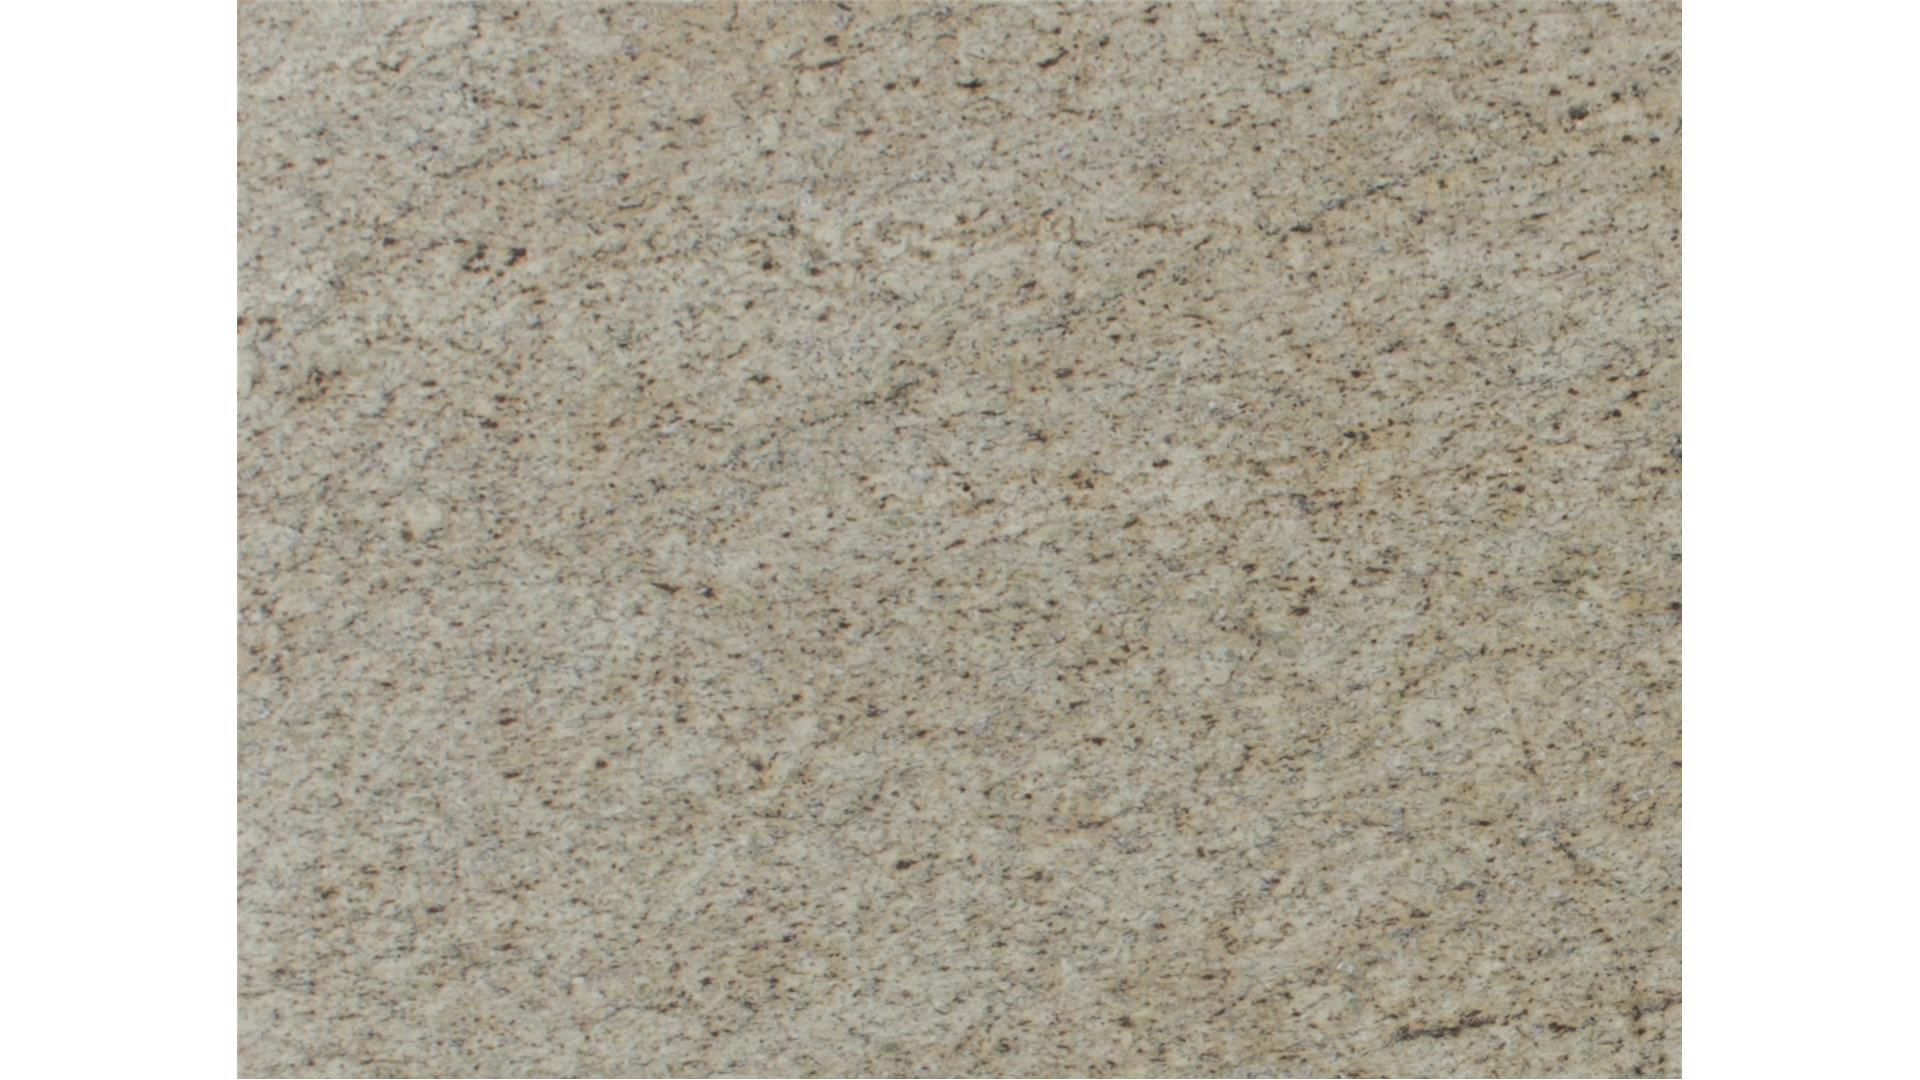 Ornamental Granite Slabs